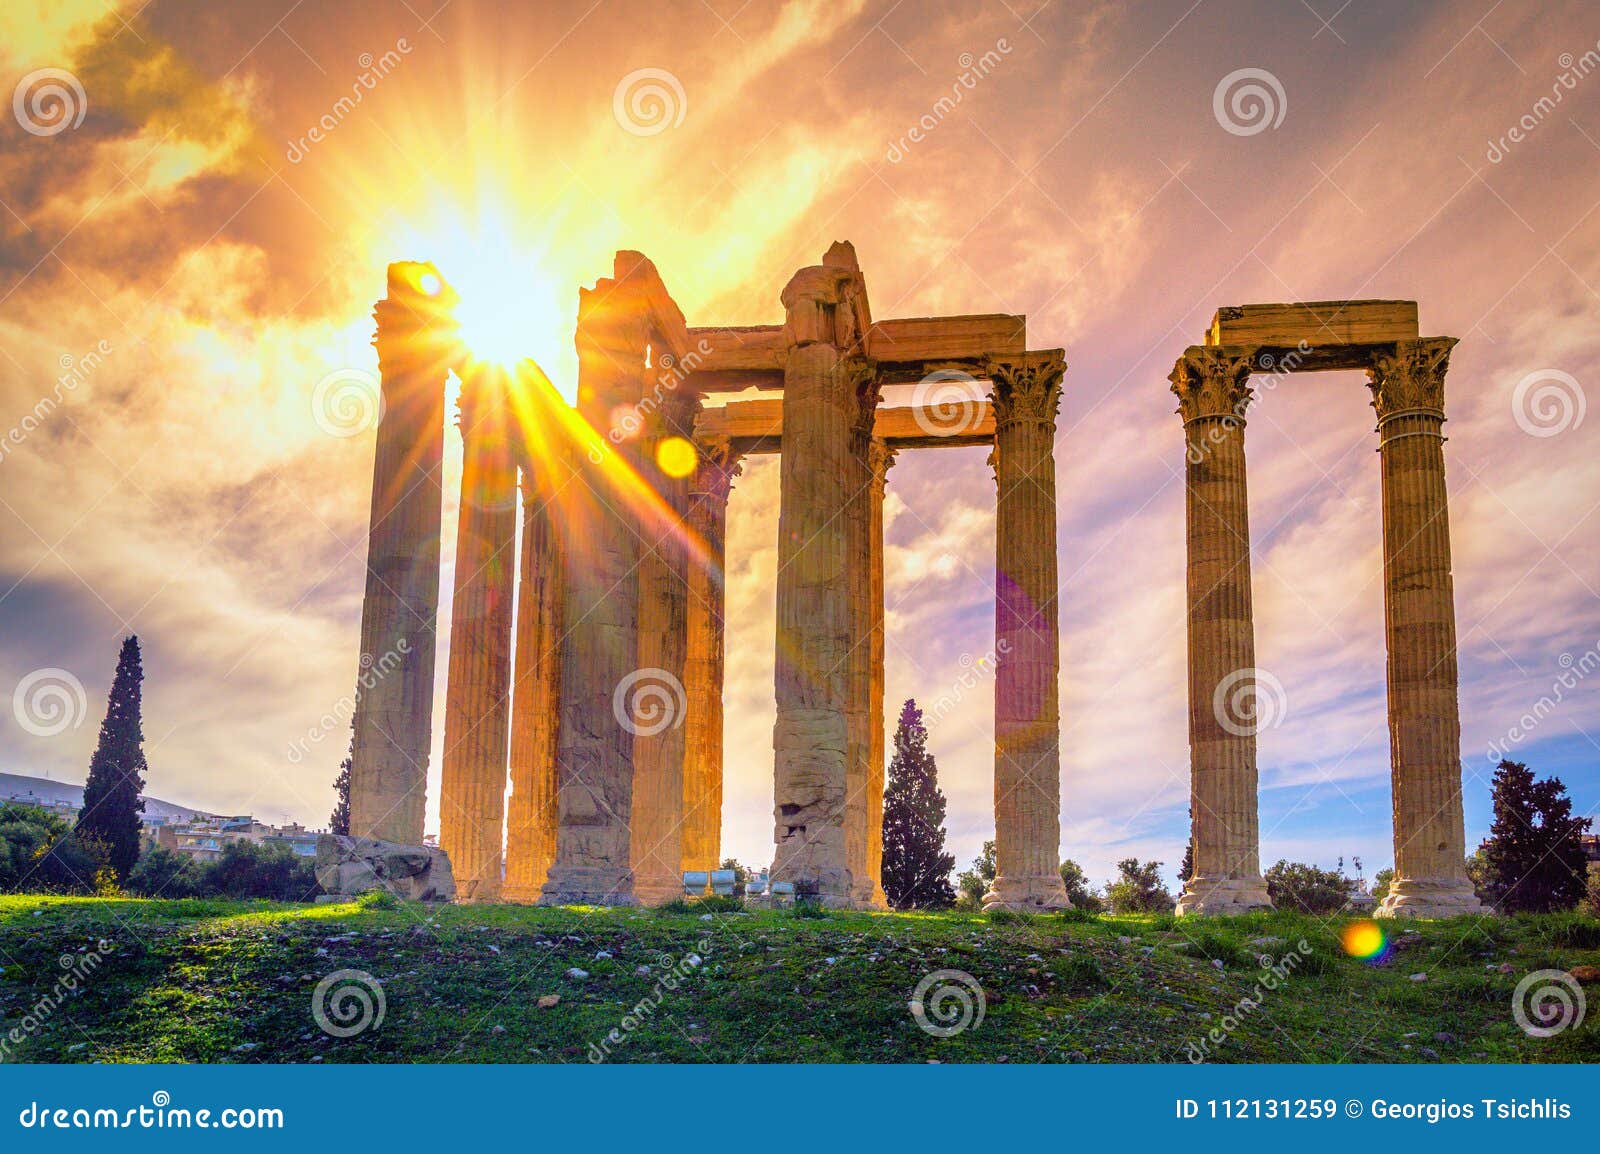 the temple of olympian zeus greek: naos tou olimpiou dios, also known as the olympieion, athens.